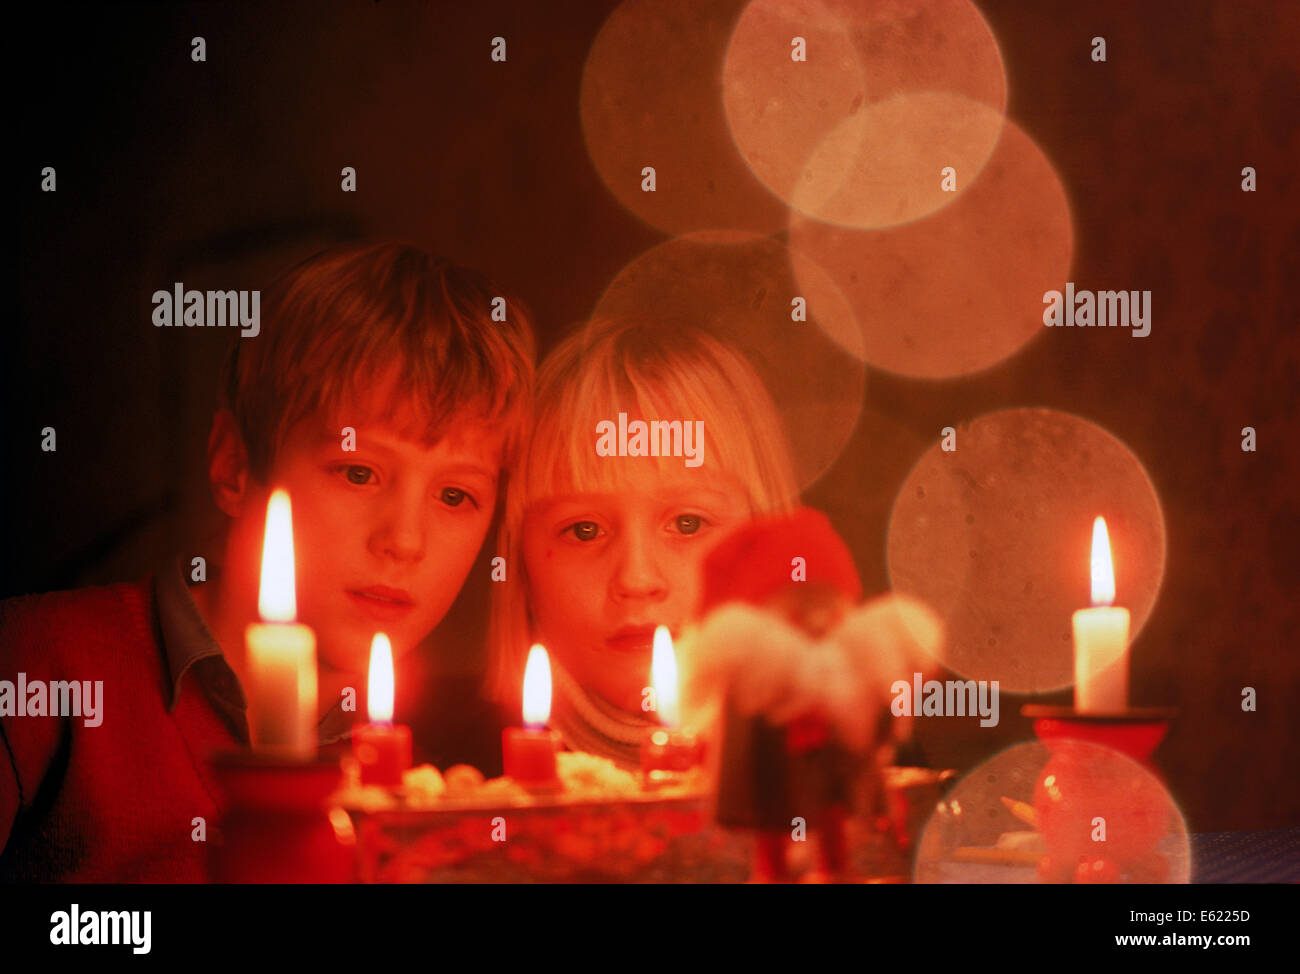 Hermano y hermana, mirando las velas de Navidad Foto de stock